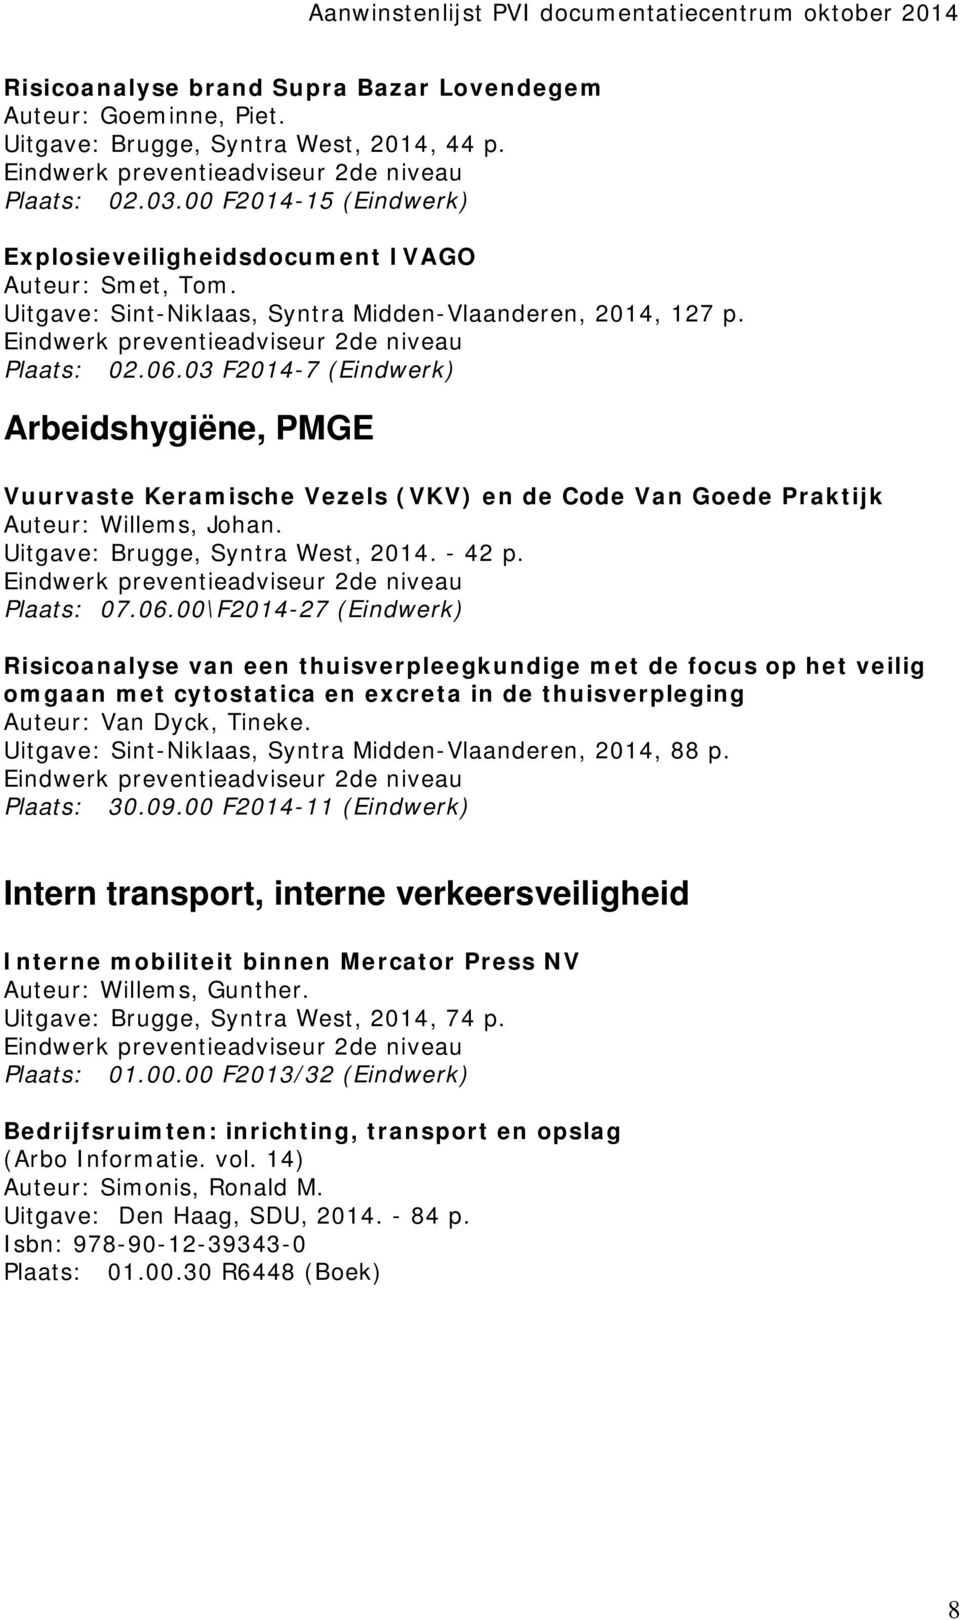 03 F2014-7 (Eindwerk) Arbeidshygiëne, PMGE Vuurvaste Keramische Vezels (VKV) en de Code Van Goede Praktijk Auteur: Willems, Johan. Uitgave: Brugge, Syntra West, 2014. - 42 p. Plaats: 07.06.